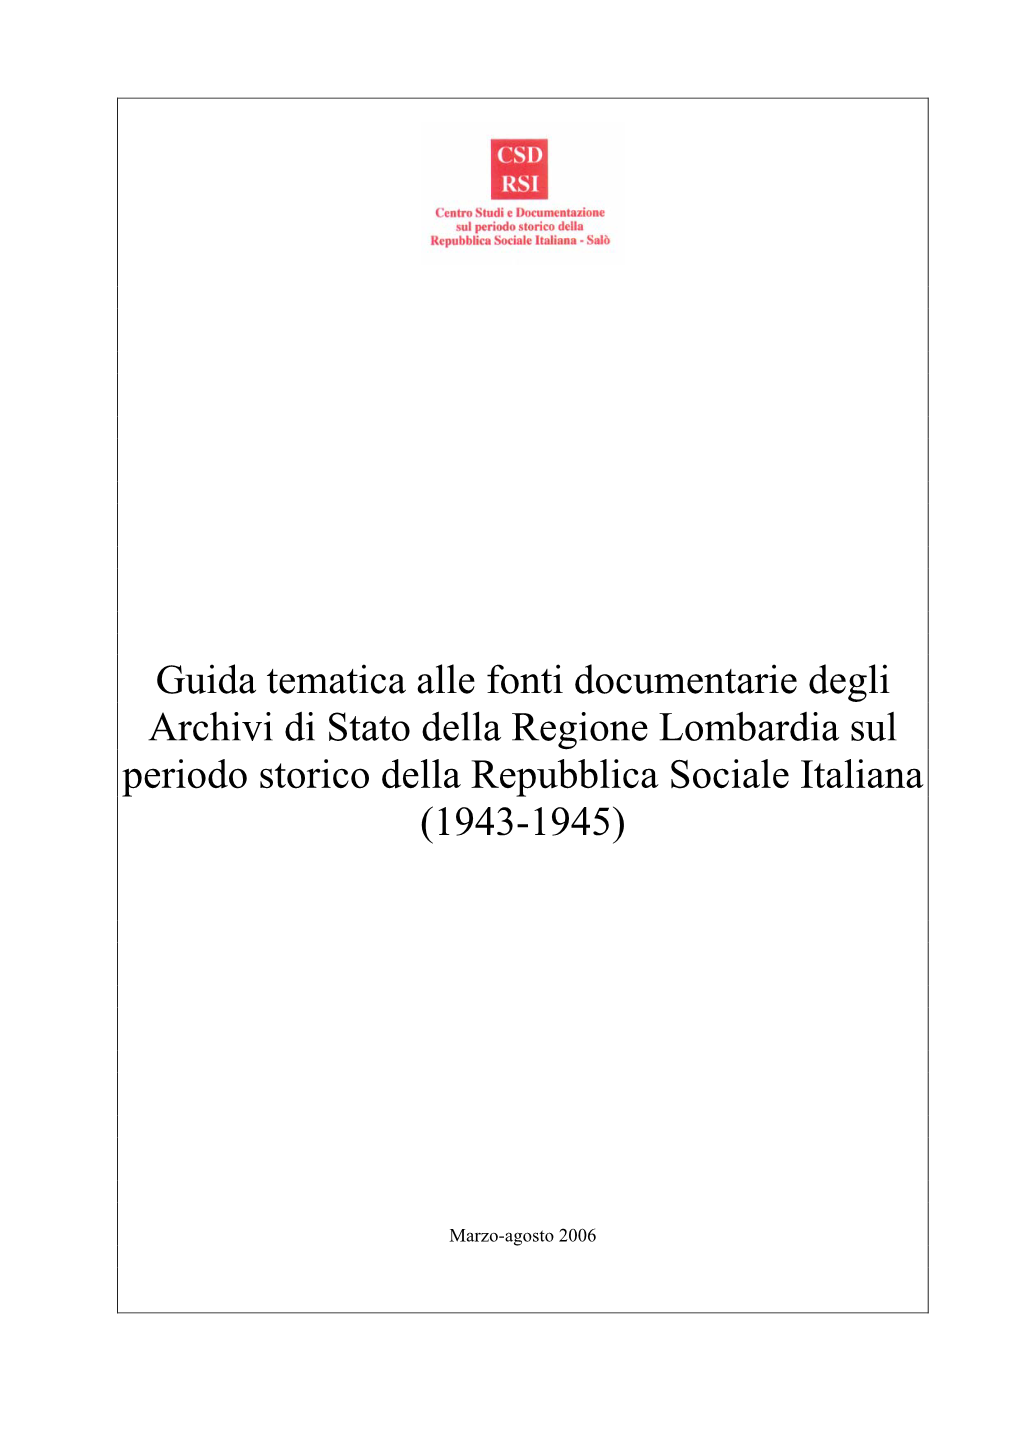 Guida Tematica Alle Fonti Documentarie Degli Archivi Di Stato Della Regione Lombardia Sul Periodo Storico Della Repubblica Sociale Italiana (1943-1945)